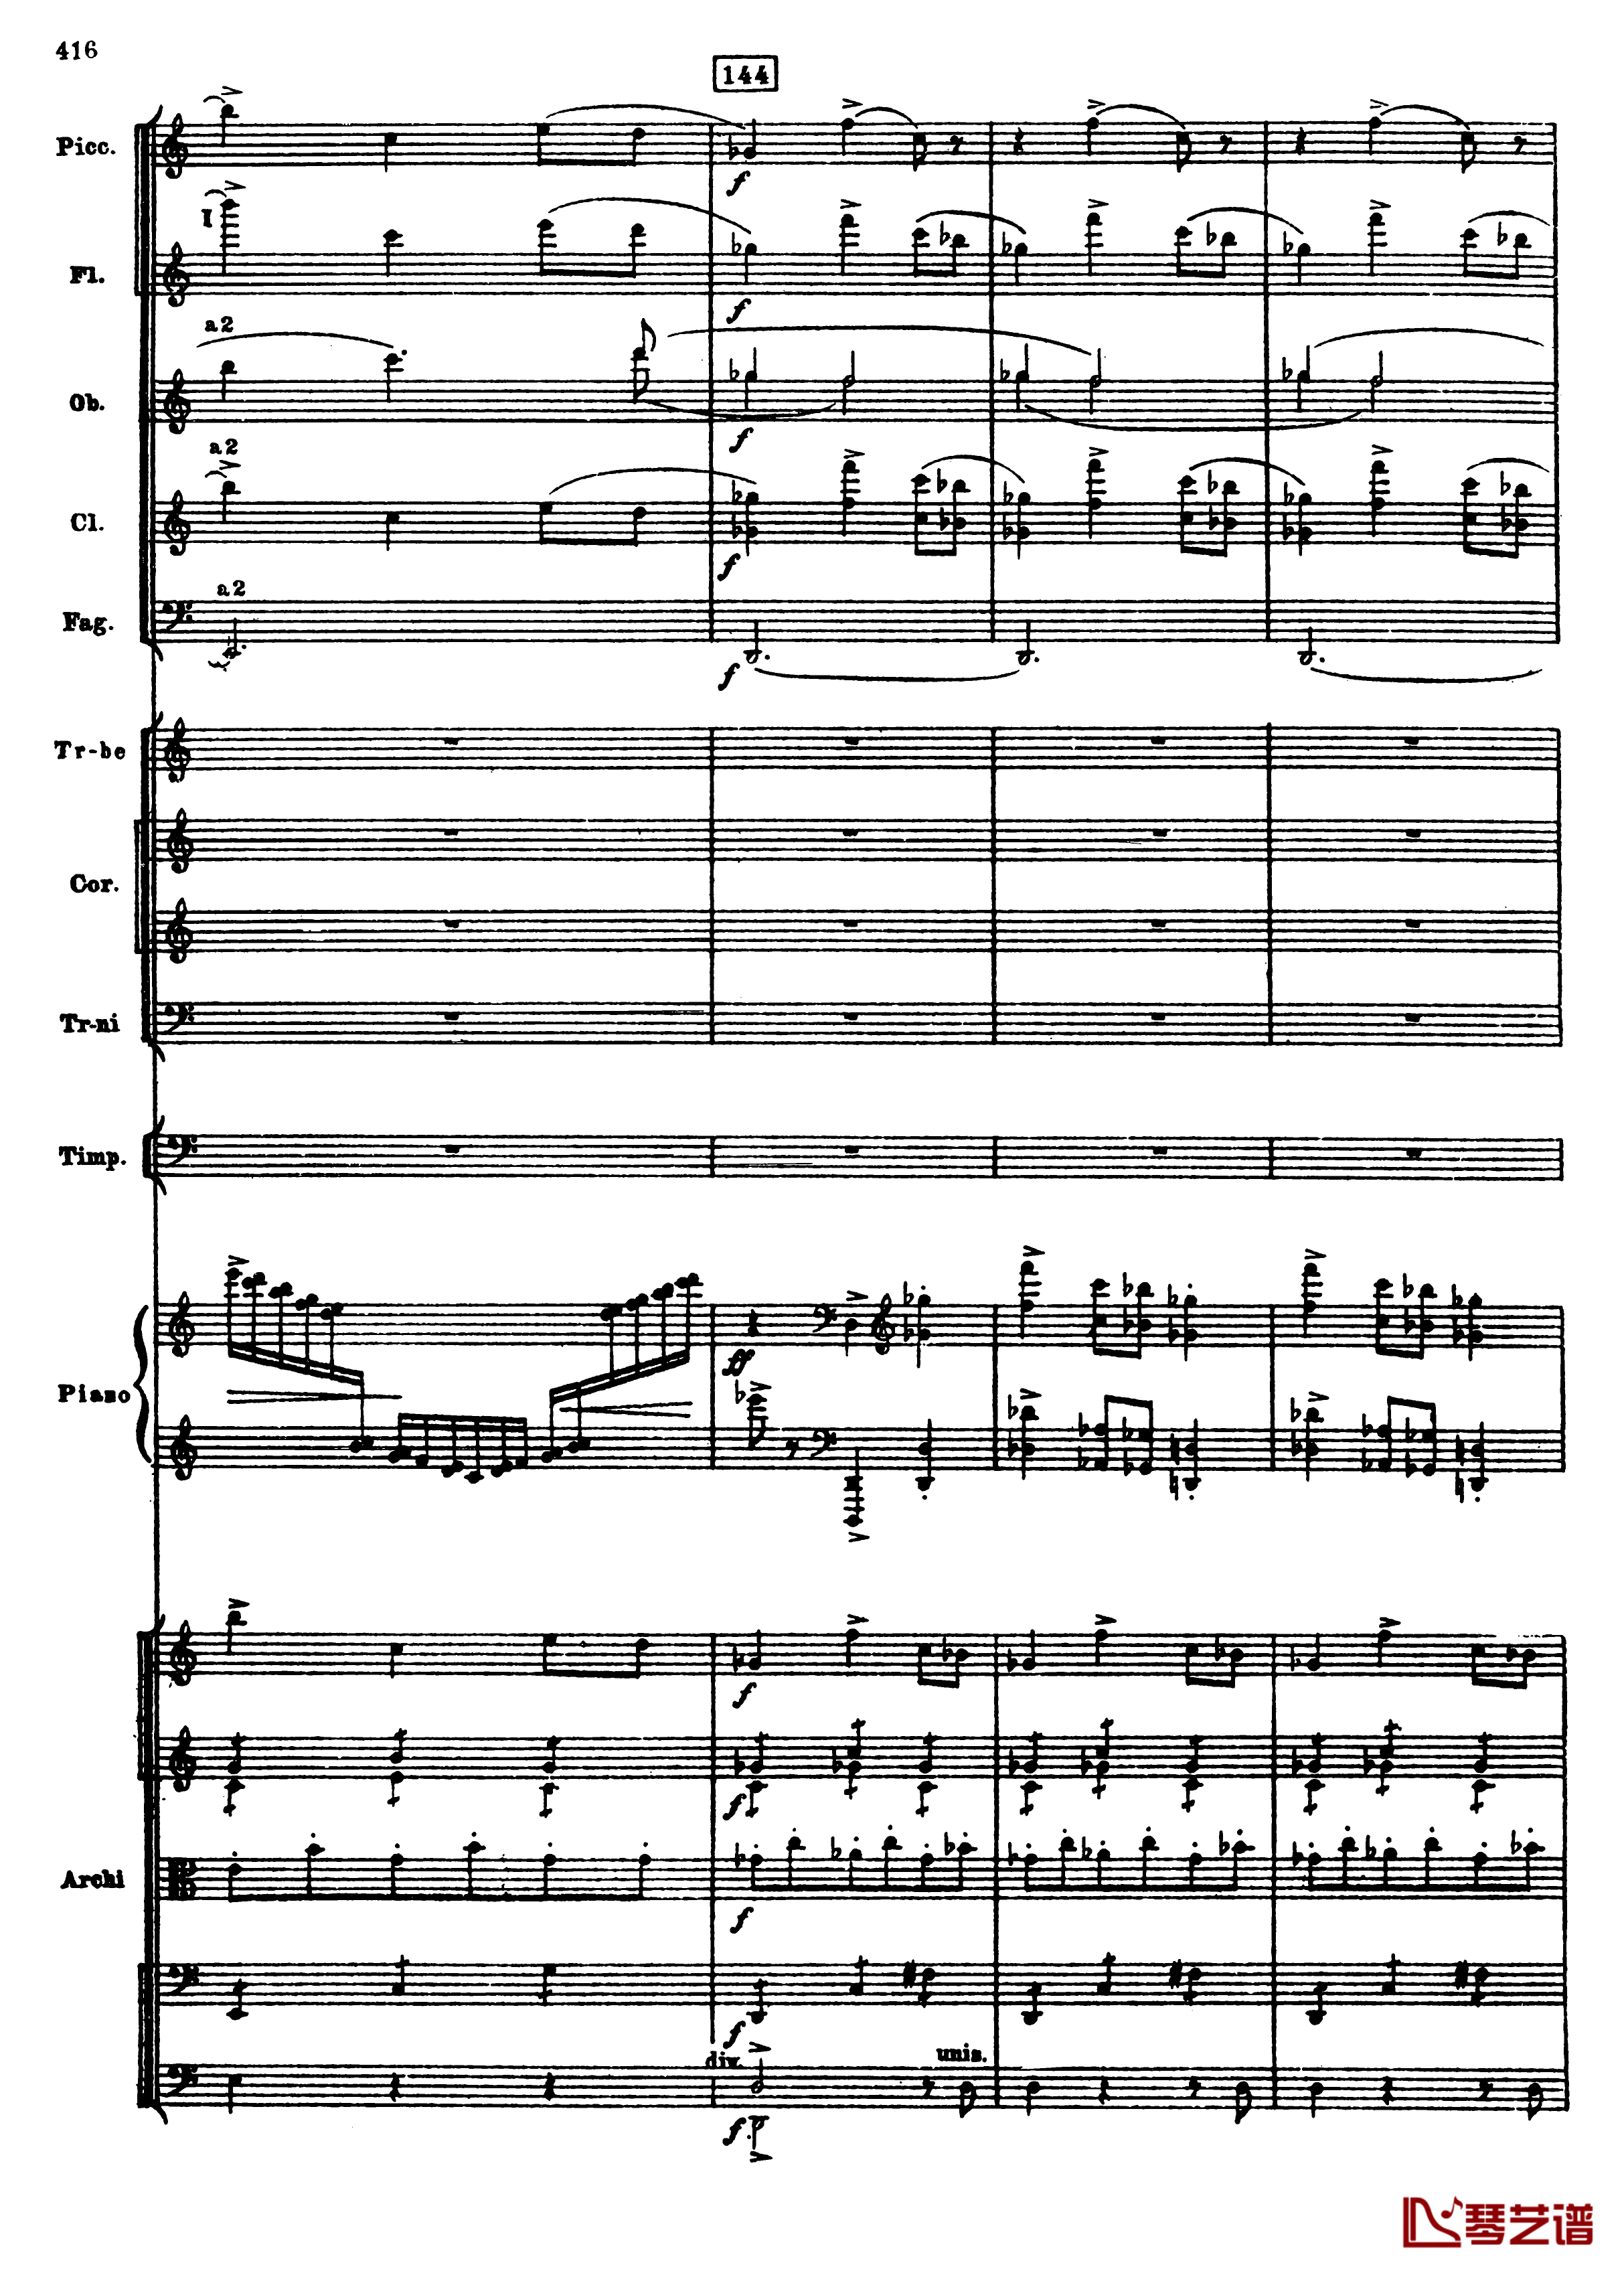 普罗科菲耶夫第三钢琴协奏曲钢琴谱-总谱-普罗科非耶夫148